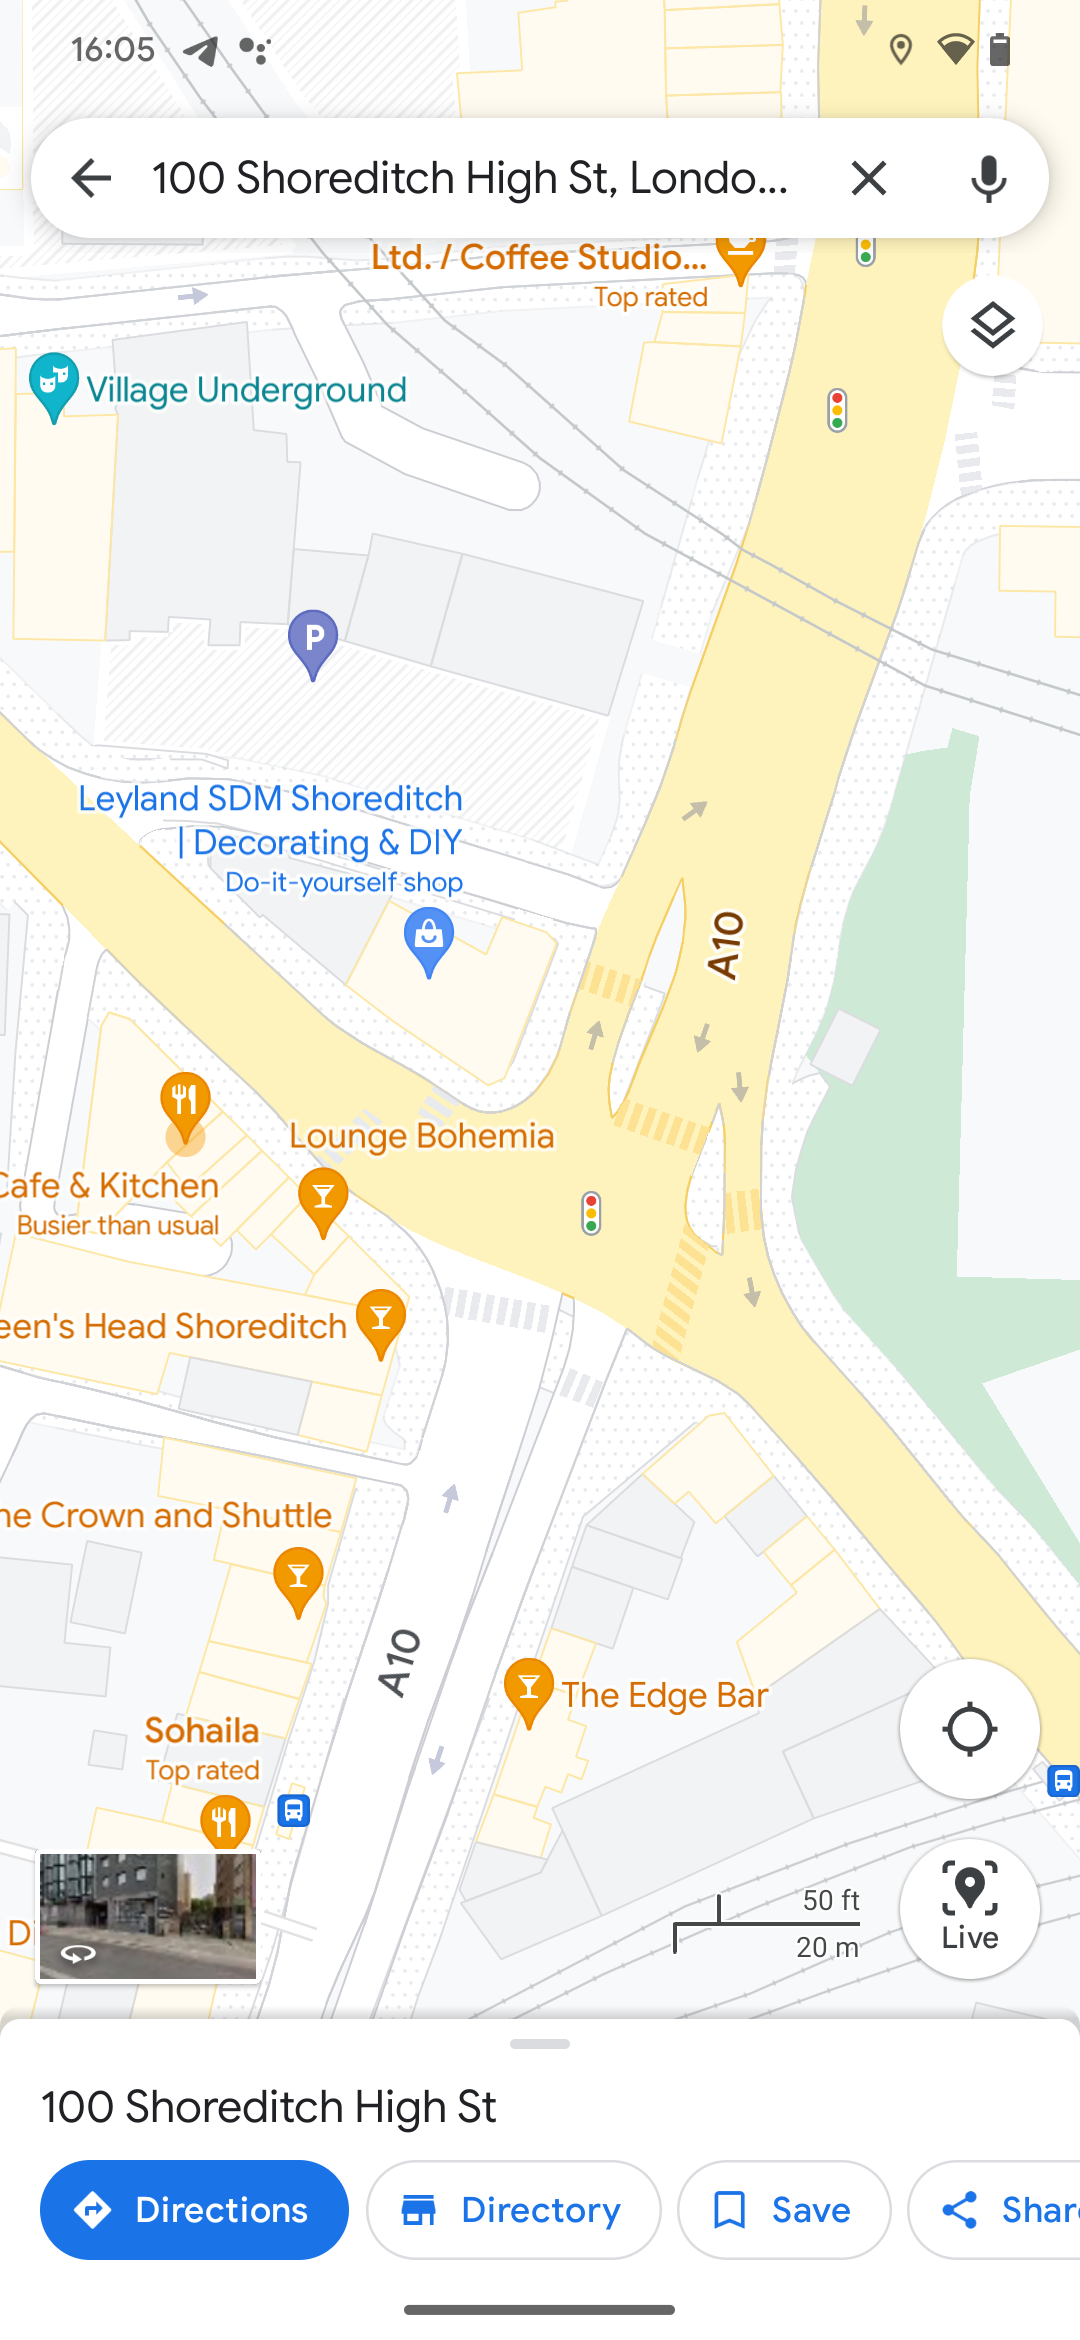 Google Maps menampilkan tampilan persimpangan jalan yang sangat disederhanakan dan bergaya hanya di London